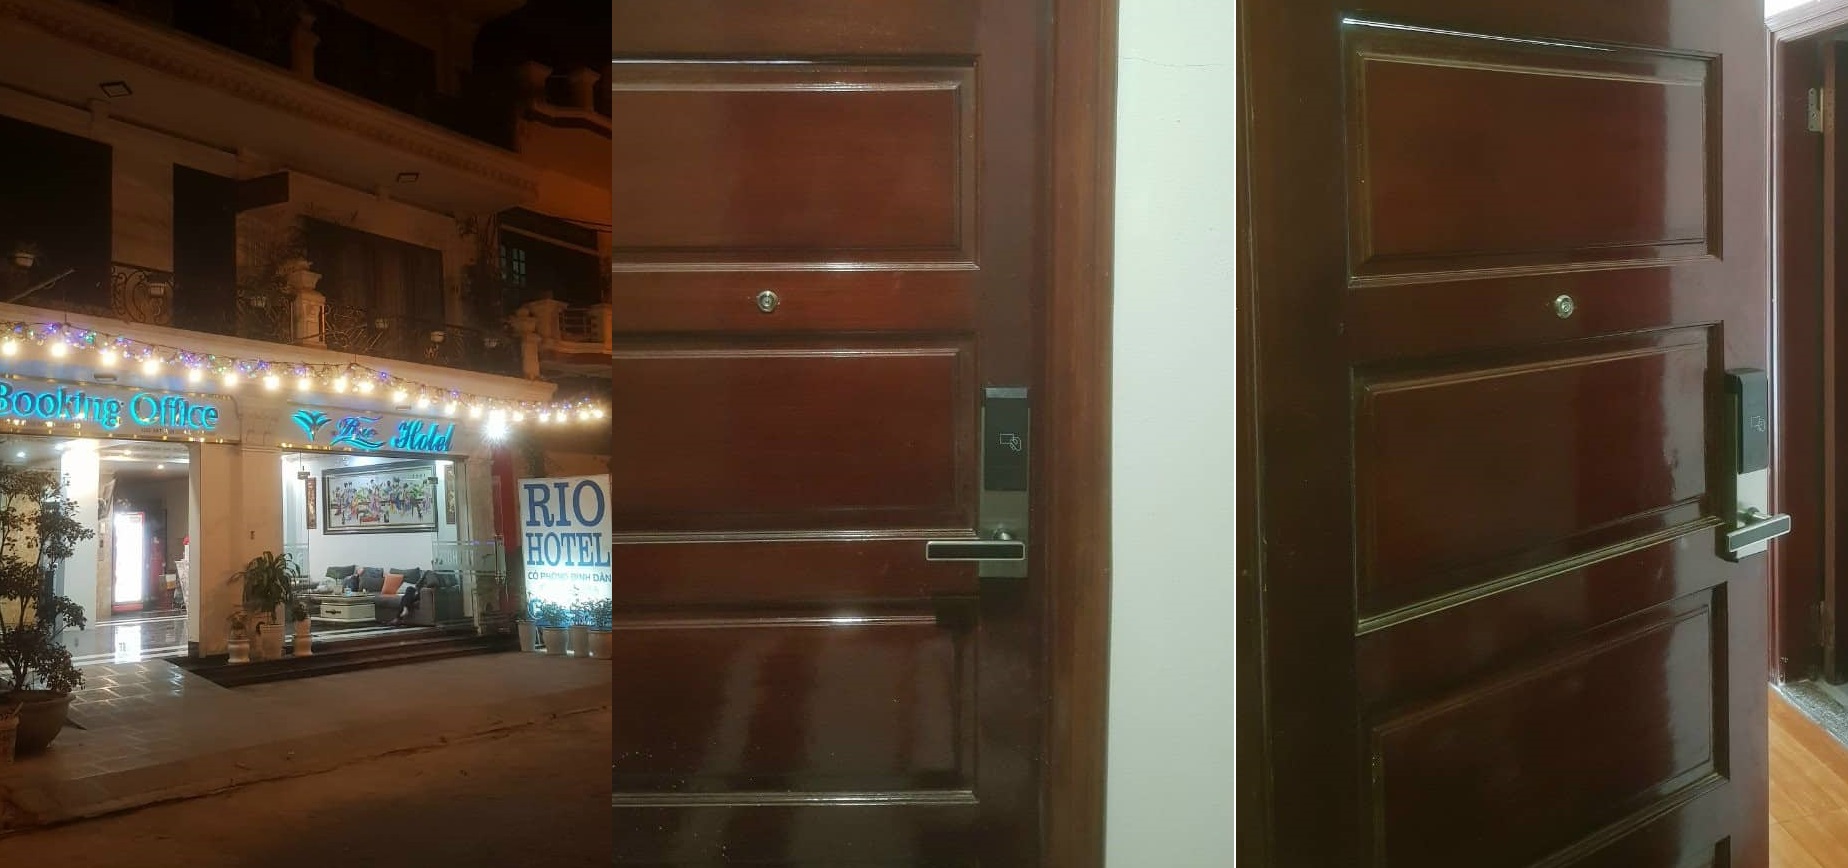 Rio hotel dùng khóa từ khách sạn tại khóa việt